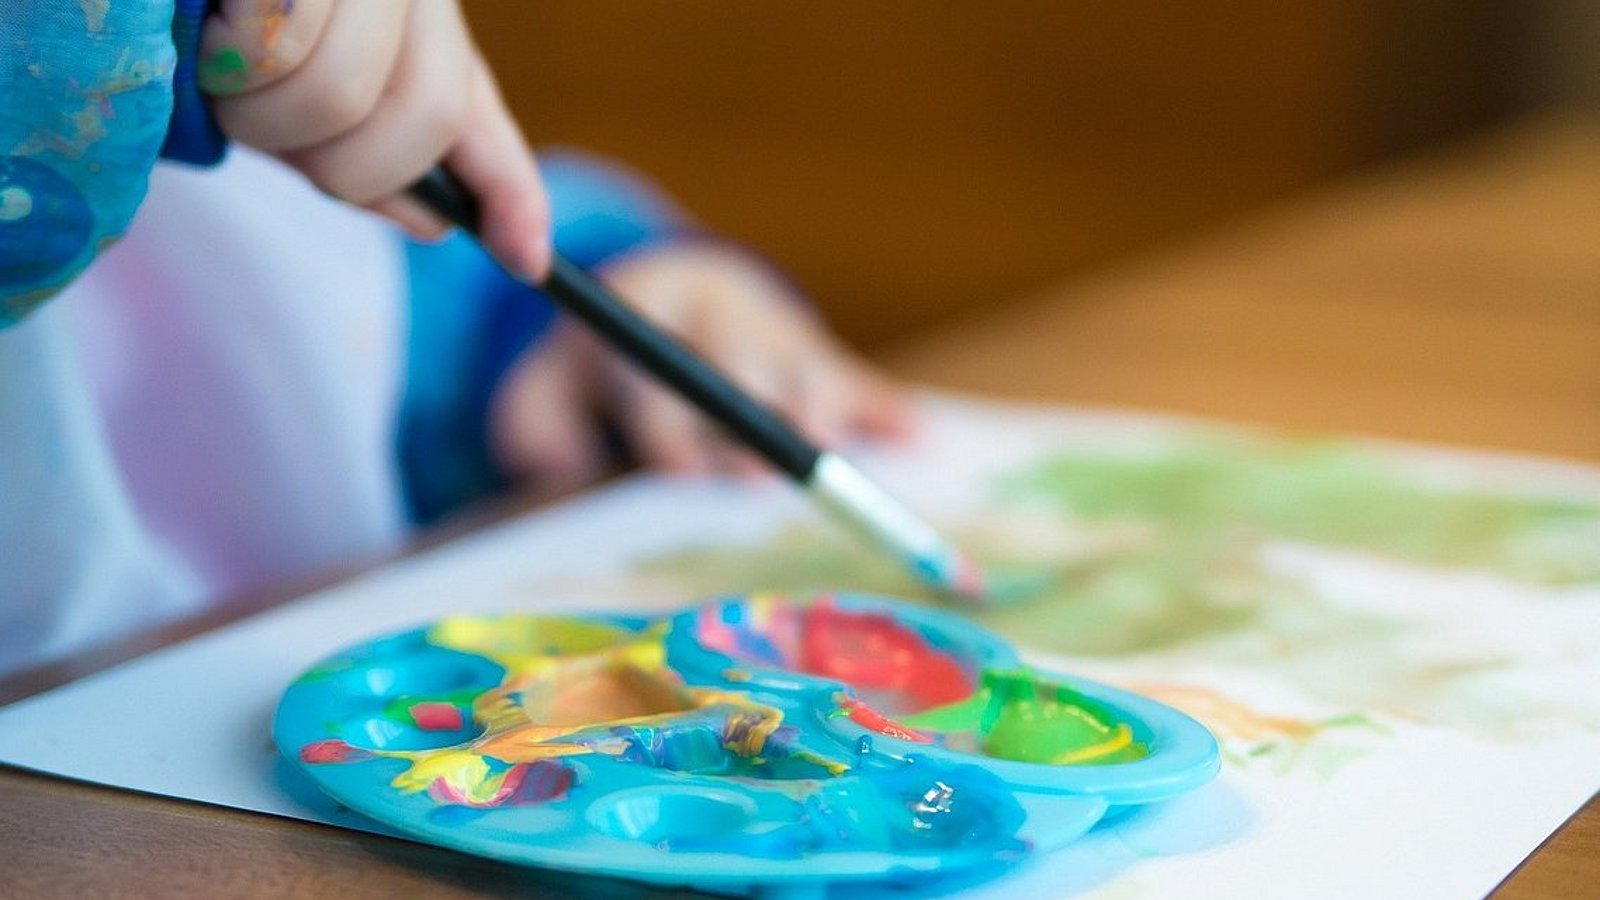 Ein Kinder-Farbenpalette, eine Kinderhand mit Pinsel in der Hand und ein bemaltes Blatt Papier. Ein Kind sitzt am Tisch und malt.